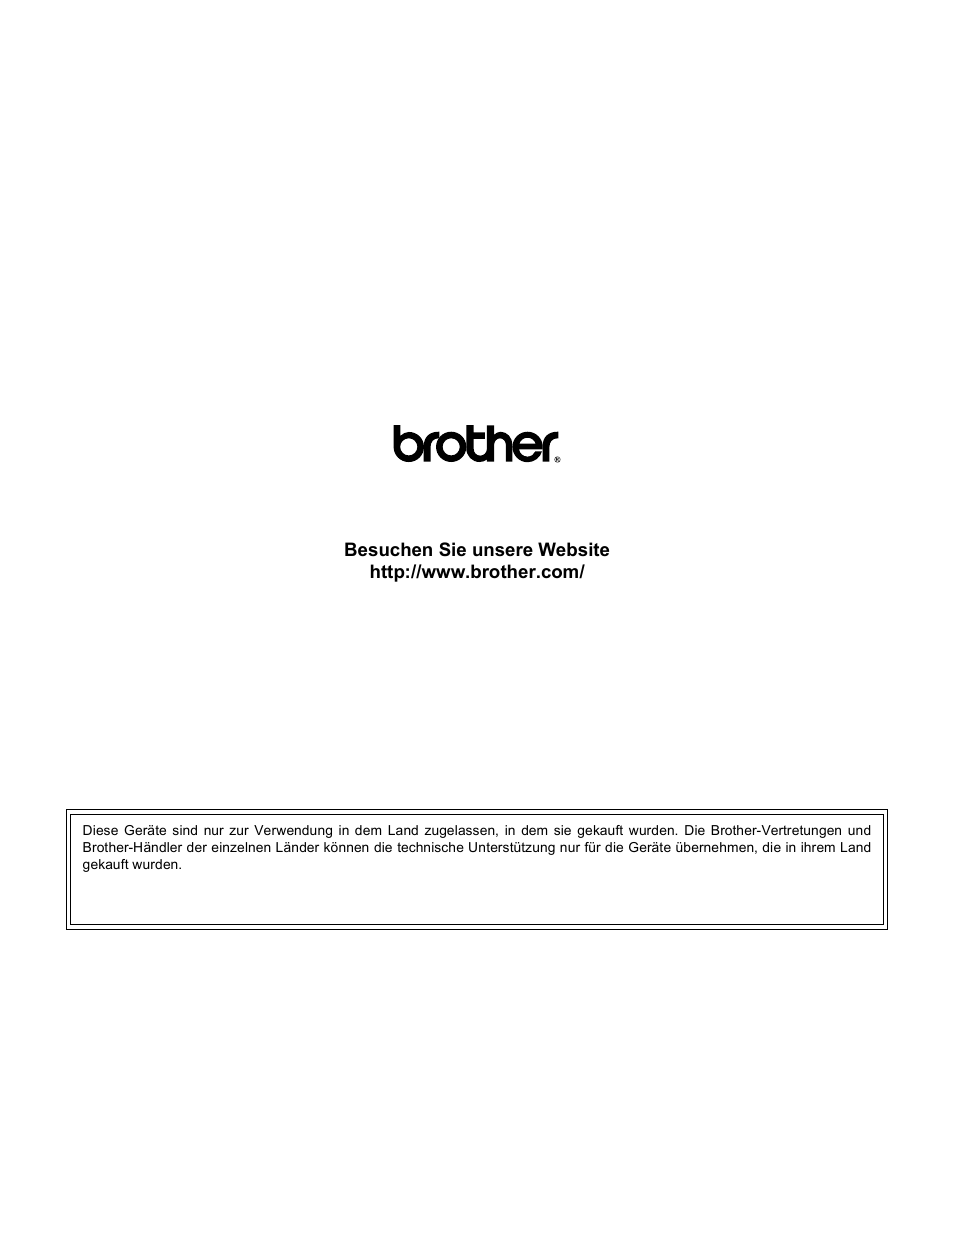 Brother ger | Brother MFC-8950DWT Benutzerhandbuch | Seite 272 / 272